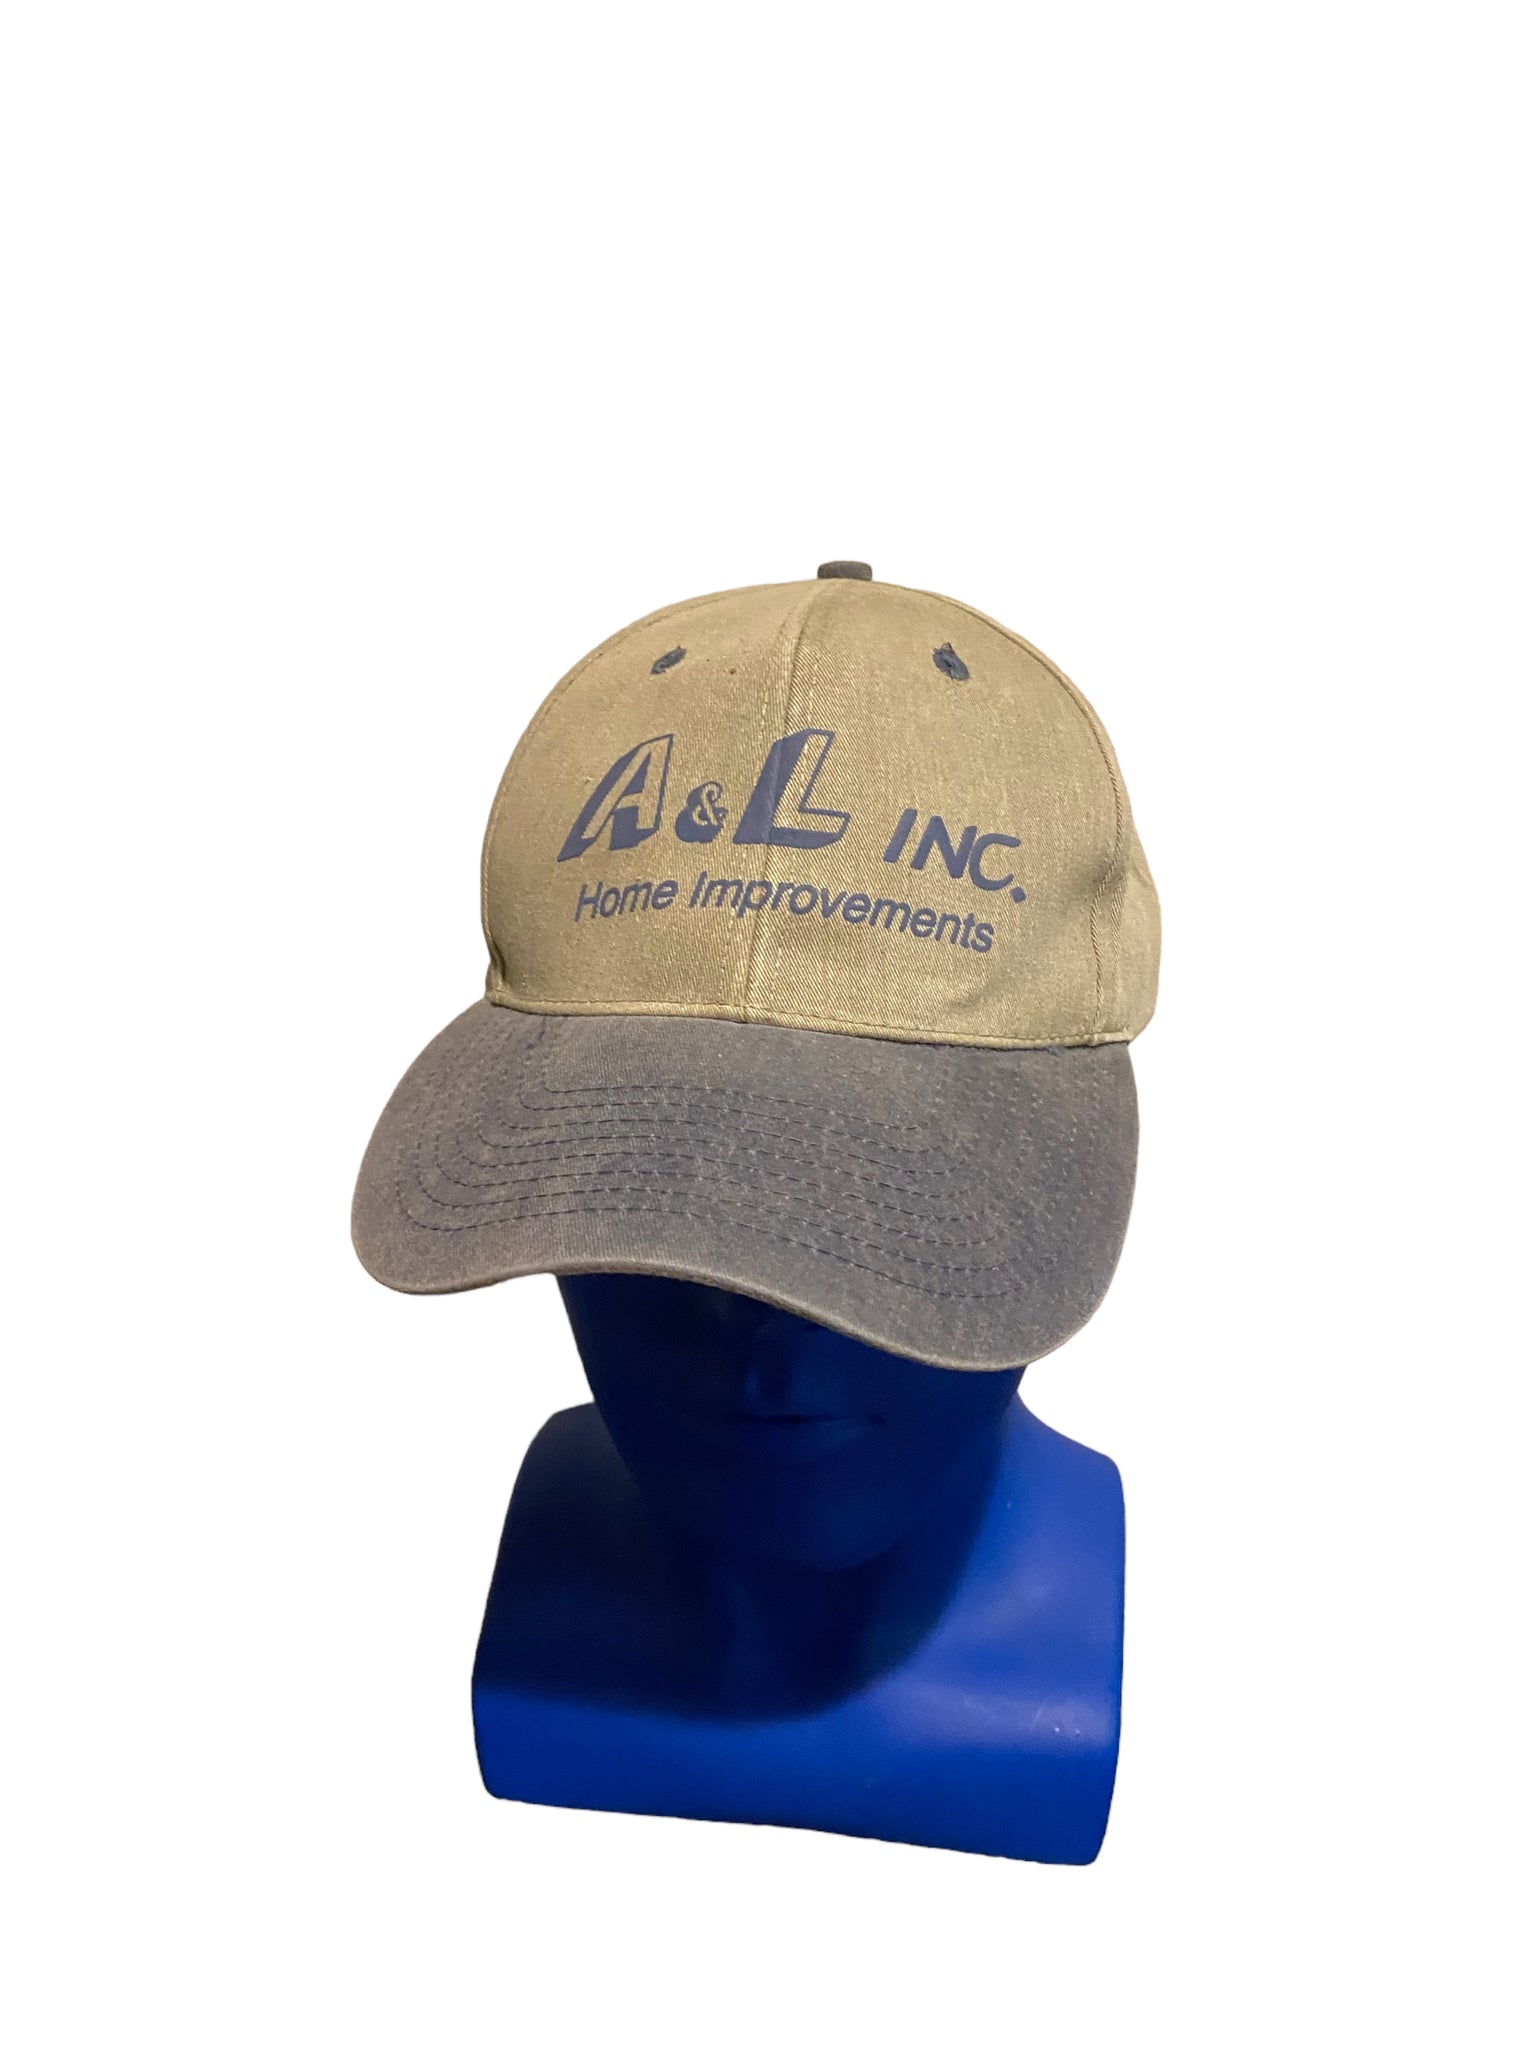 Vintage A & L Home Improvements Hat Adjustable Strap